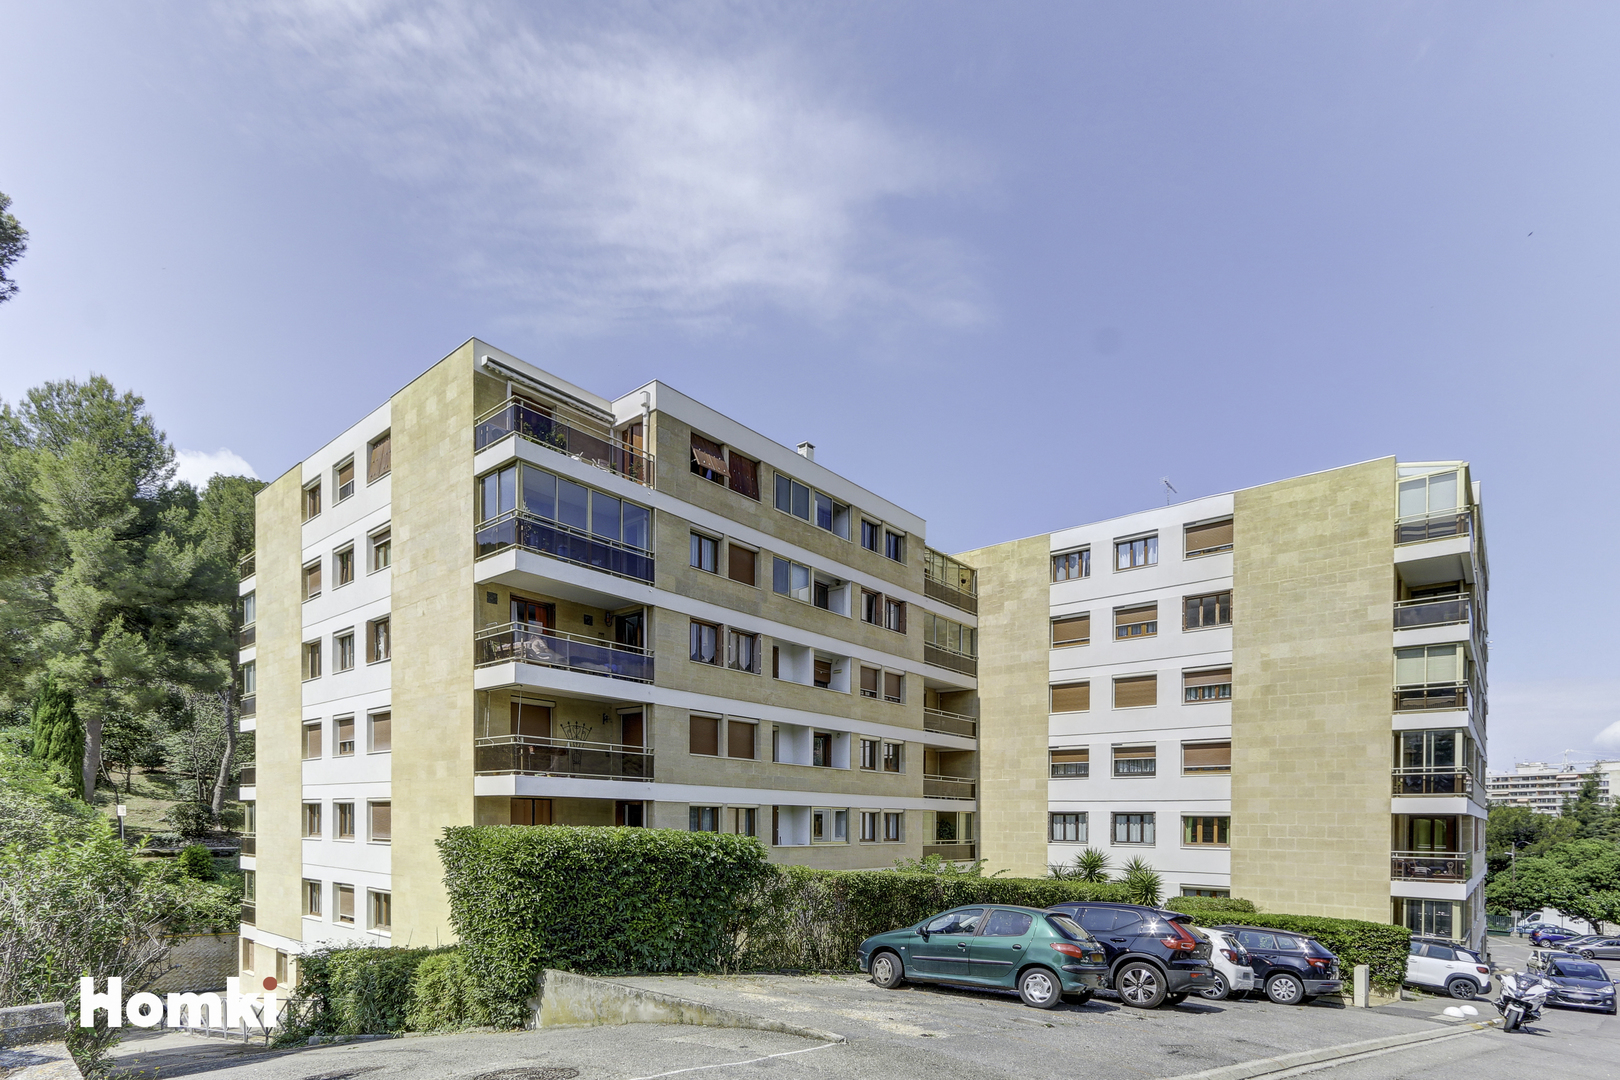 Homki - Vente Appartement  de 95.0 m² à Marseille 13009